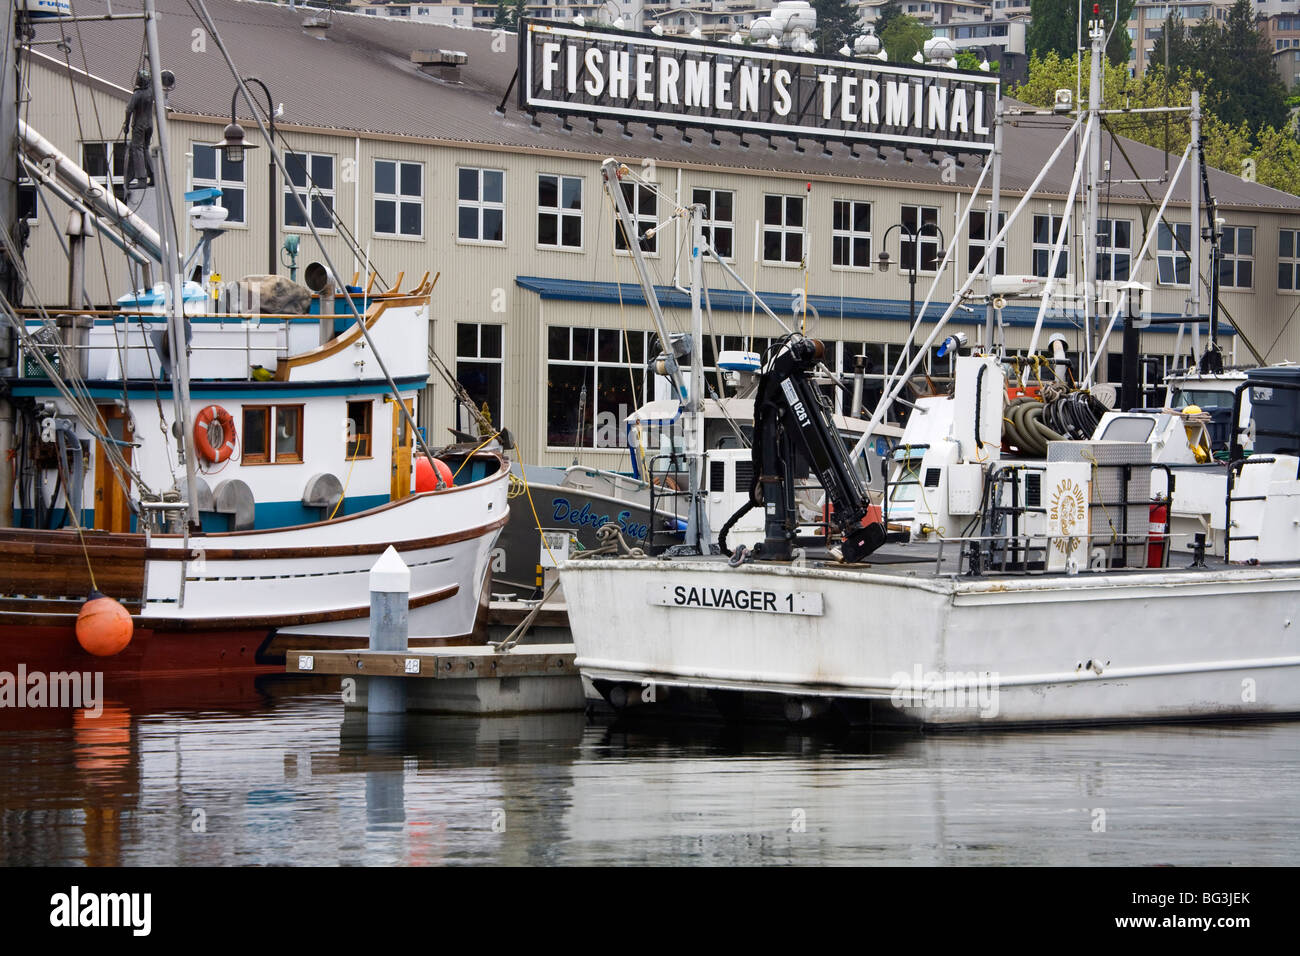 Terminal de pescadores, Seattle, Estado de Washington, Estados Unidos de América, América del Norte Foto de stock